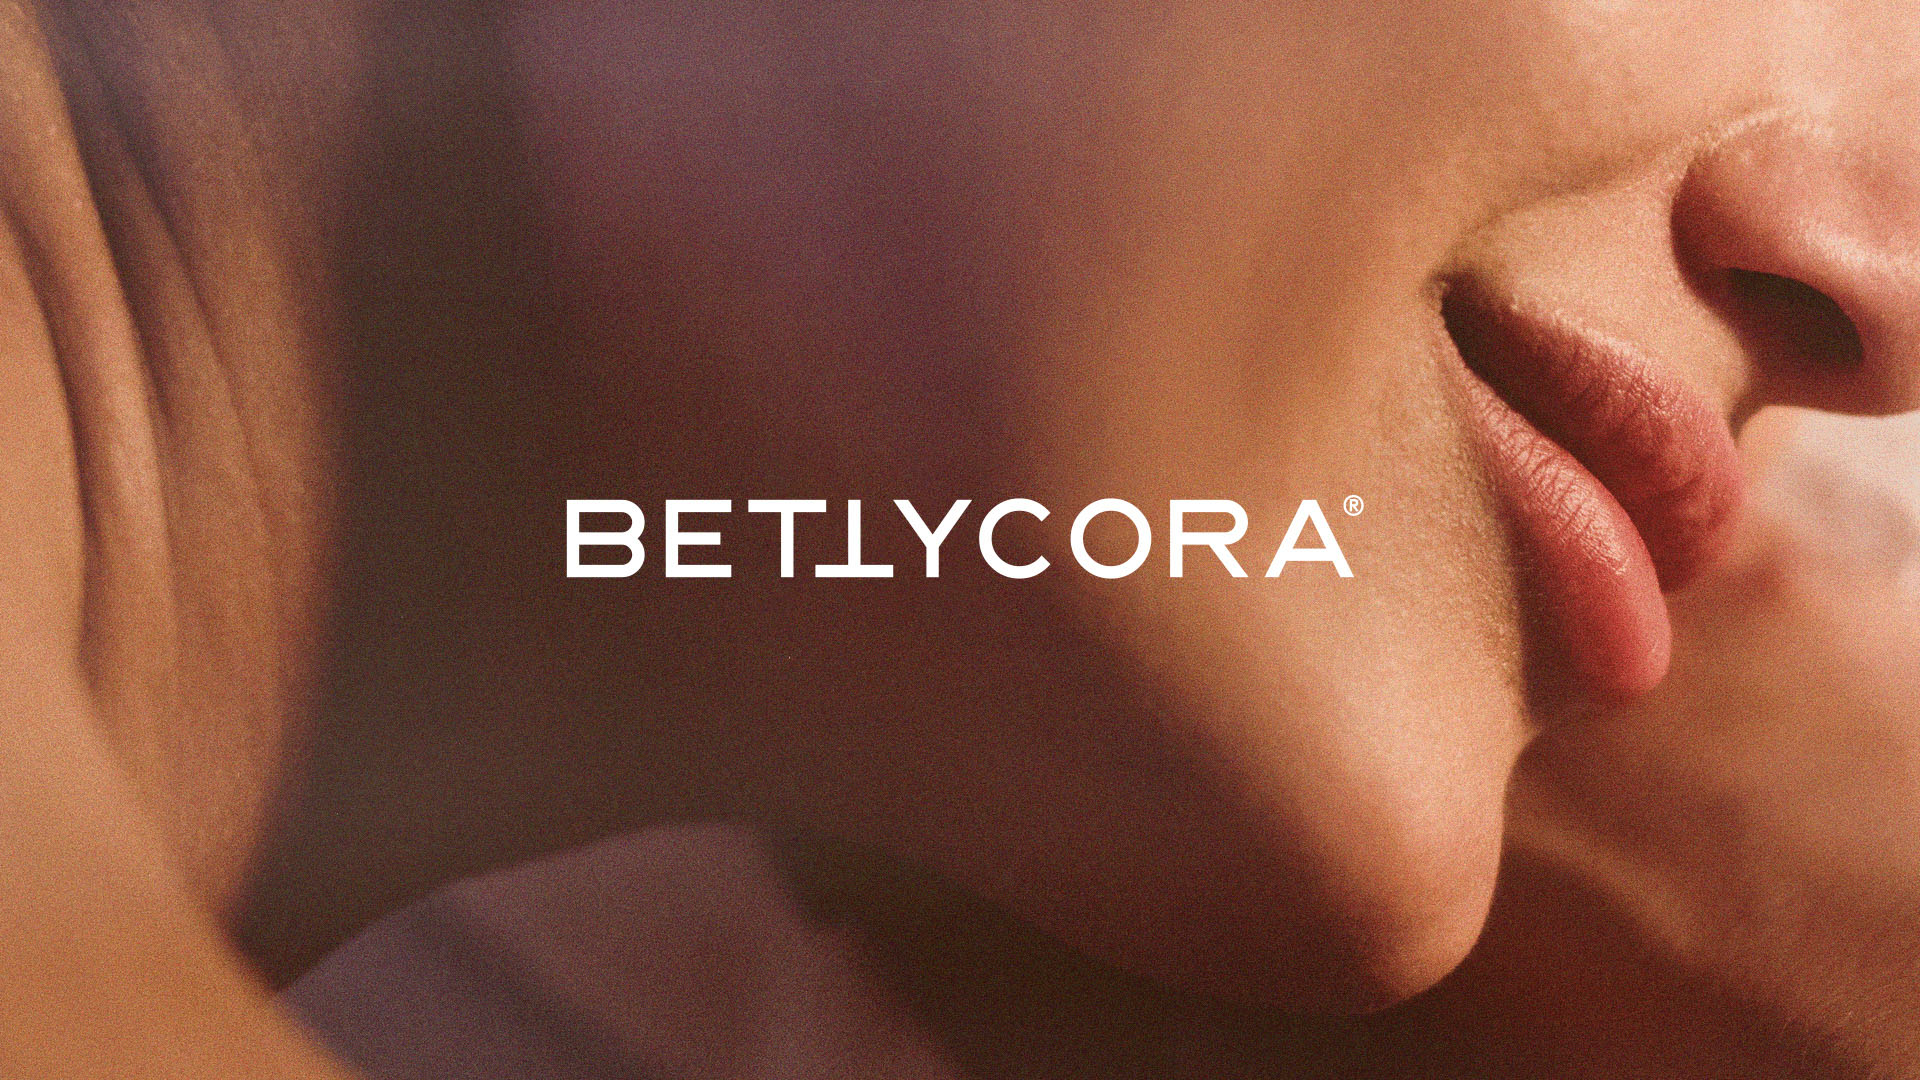 bettycora品牌形象设计提案-04.jpg